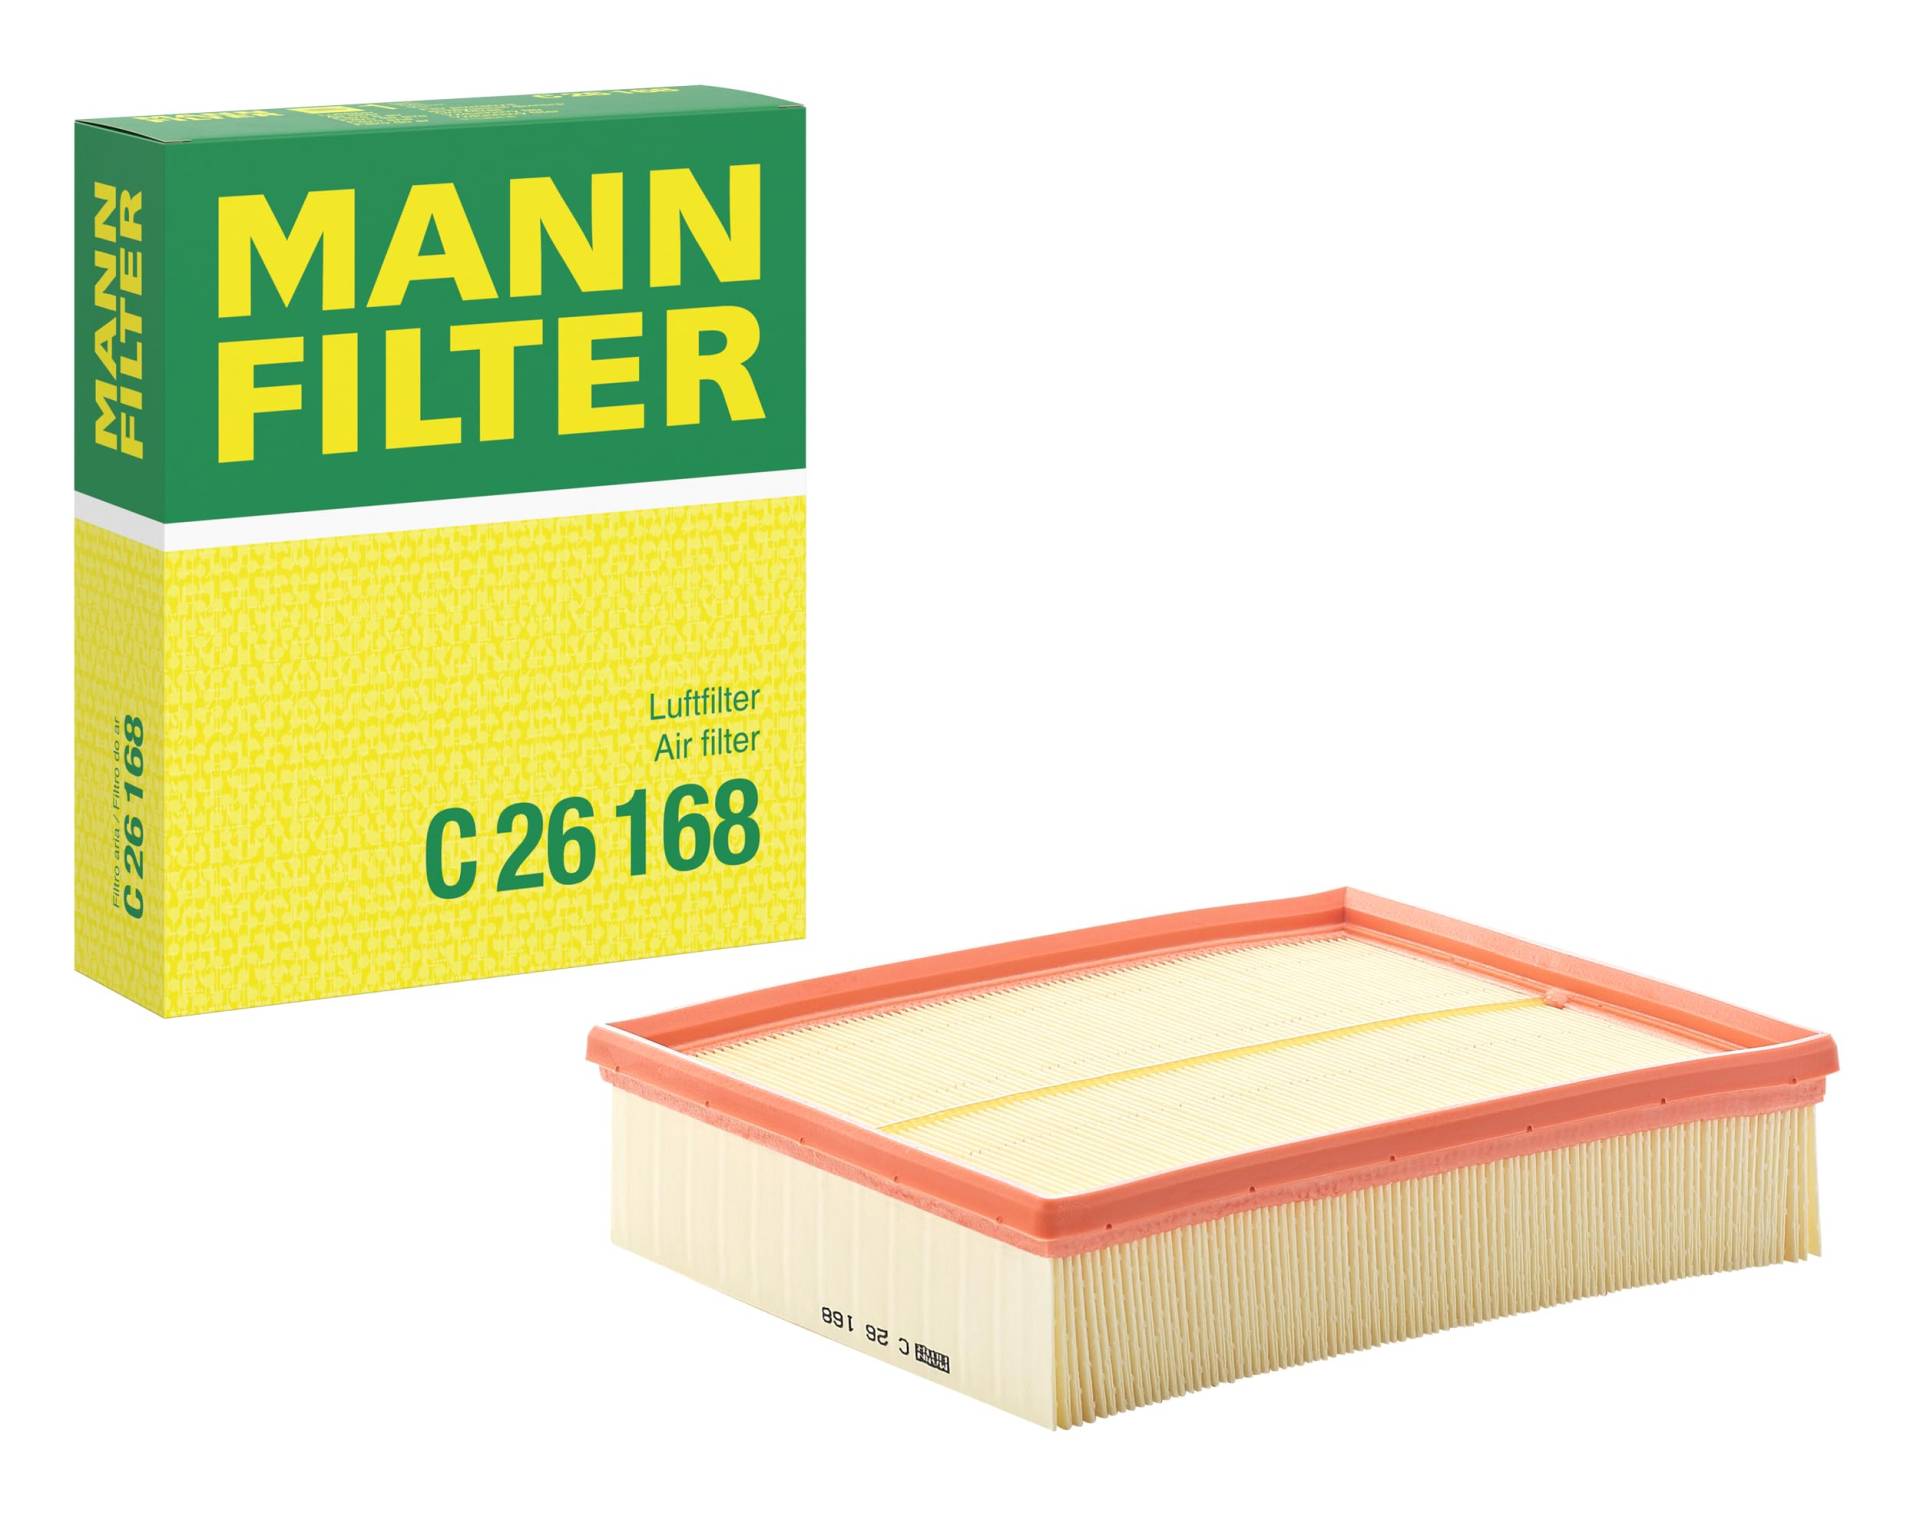 Original MANN-FILTER Luftffilter C 26 168 – Für PKW von MANN-FILTER